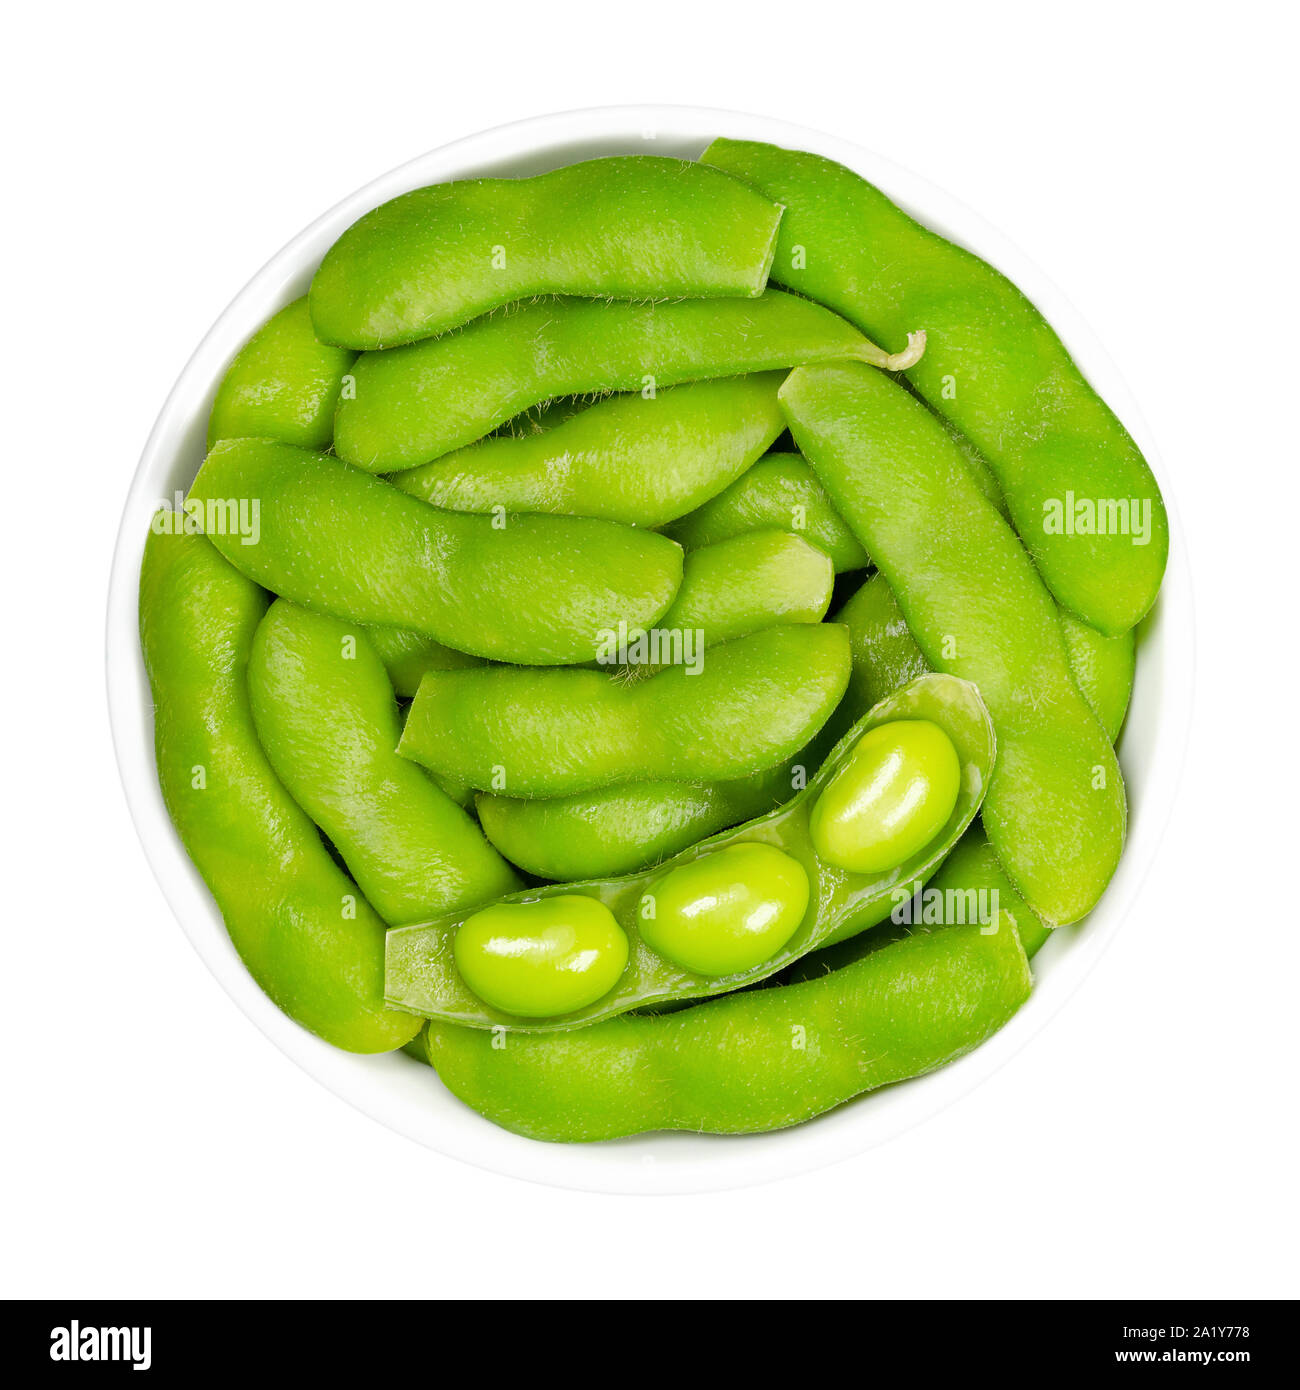 Le soja vert dans le pod, edamame, blanc dans un bol. Les graines de soja immatures, aussi Maodou. Glycine max, une légumineuse, comestibles après cuisson et riche source de protéines Banque D'Images